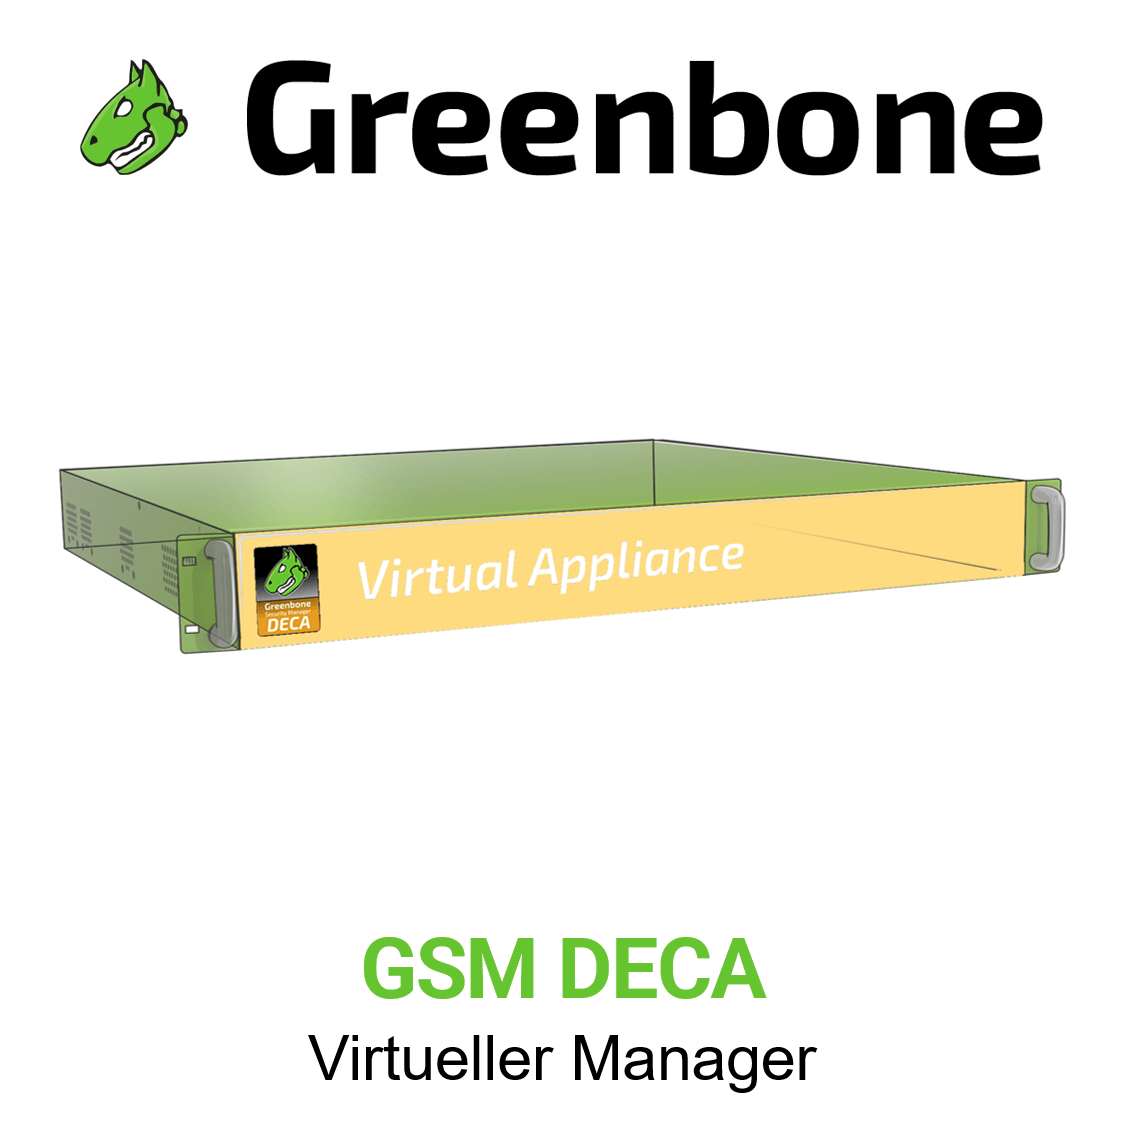 Greenbone GSM-DECA Virtuelle Appliance Vorschaubild mit Greenbone logo und Modellbezeichnung